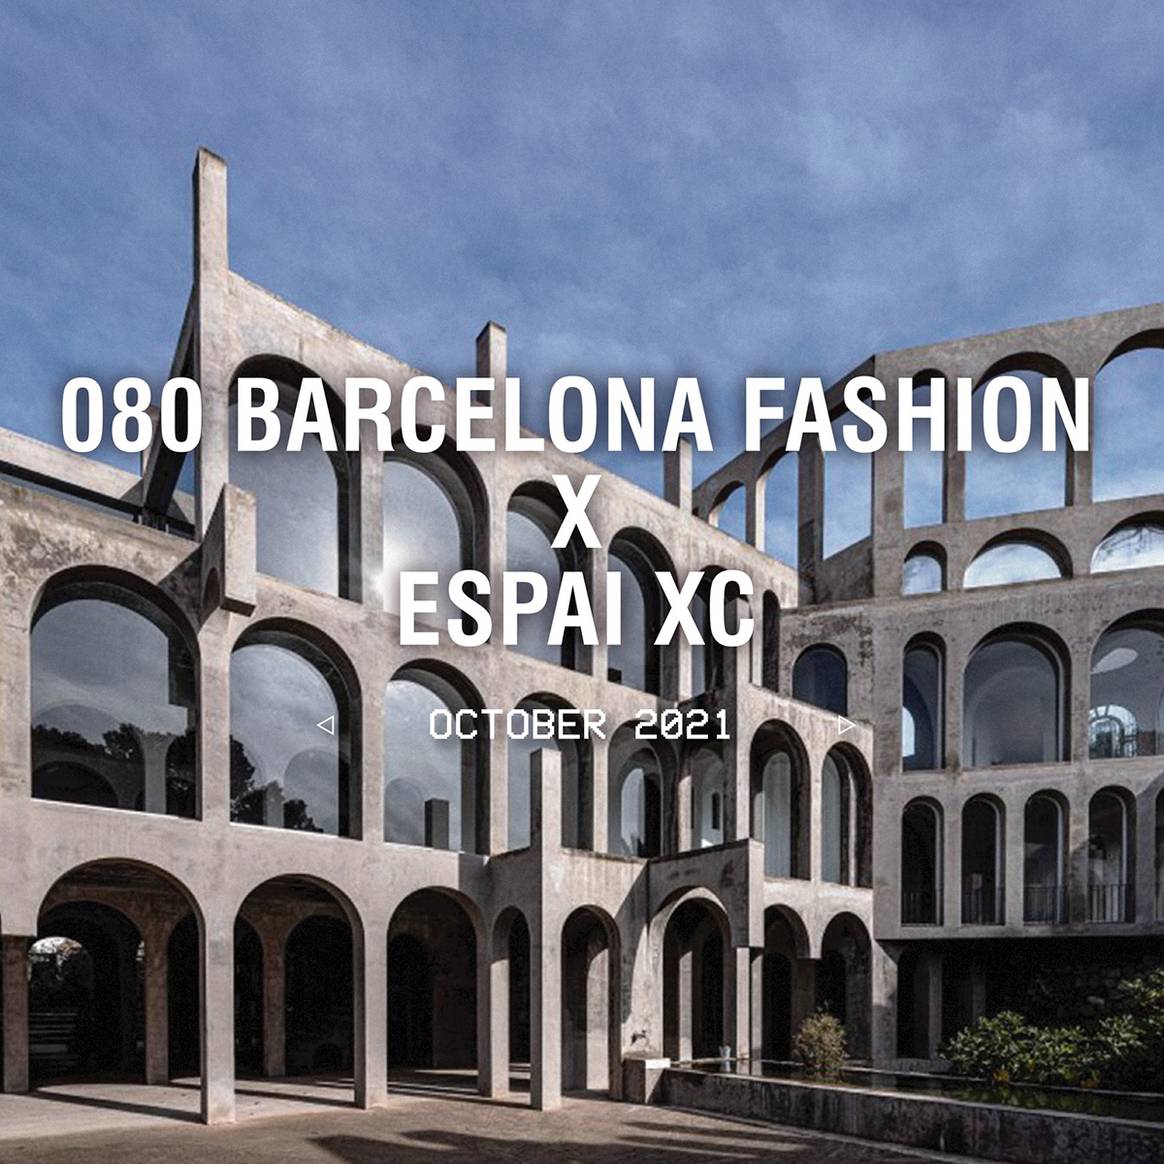 Photo Credits: 080 Barcelona Fashion.